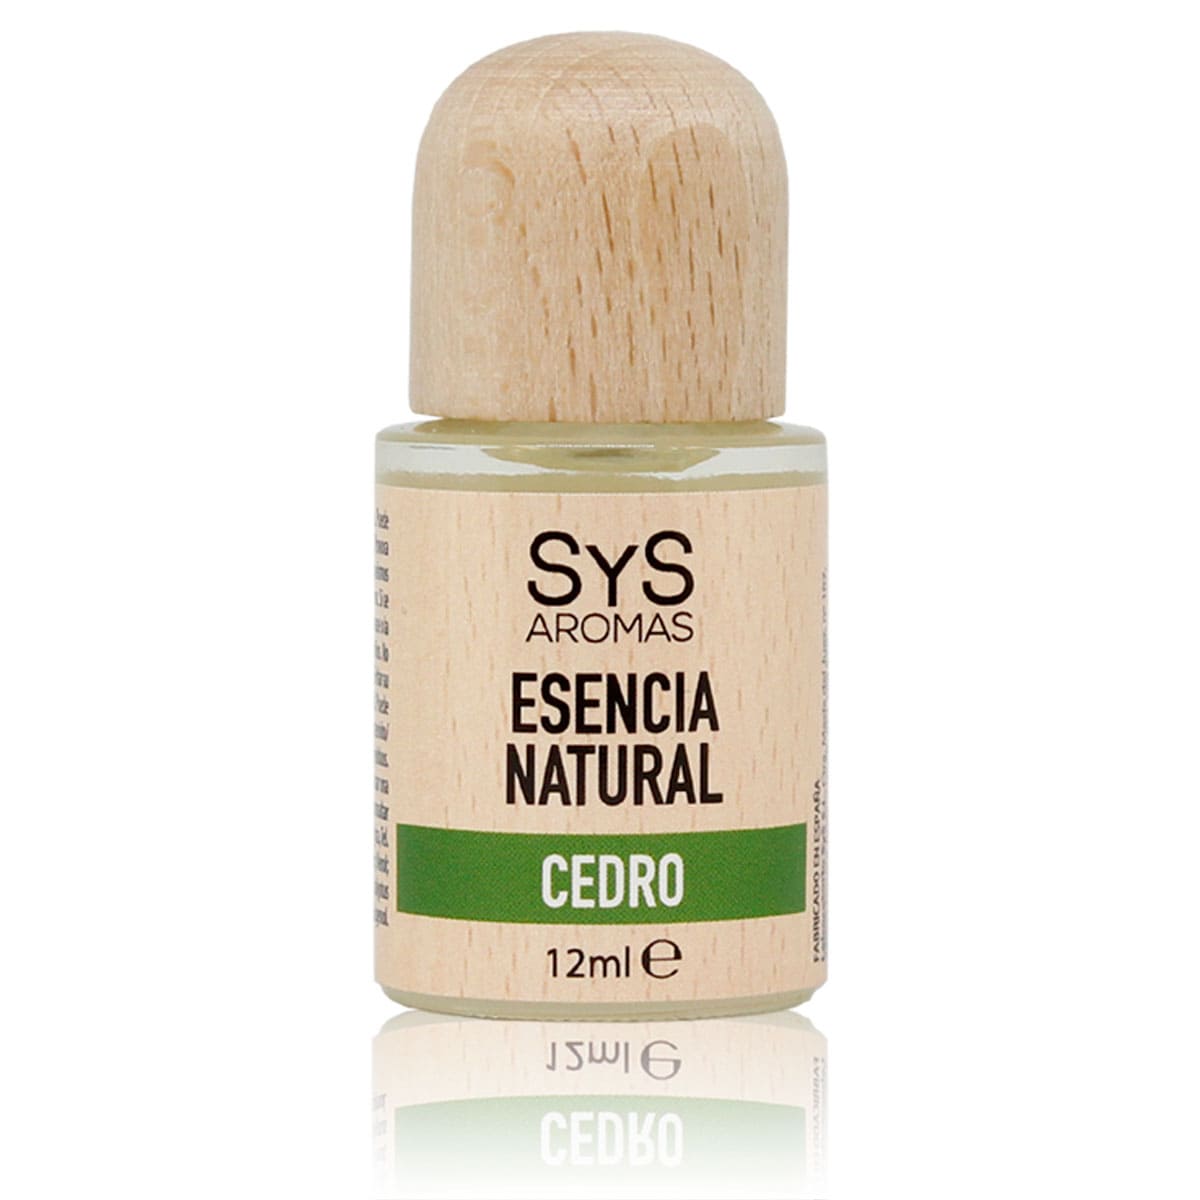 Buy Cedar Essence 12ml SYS Aromas